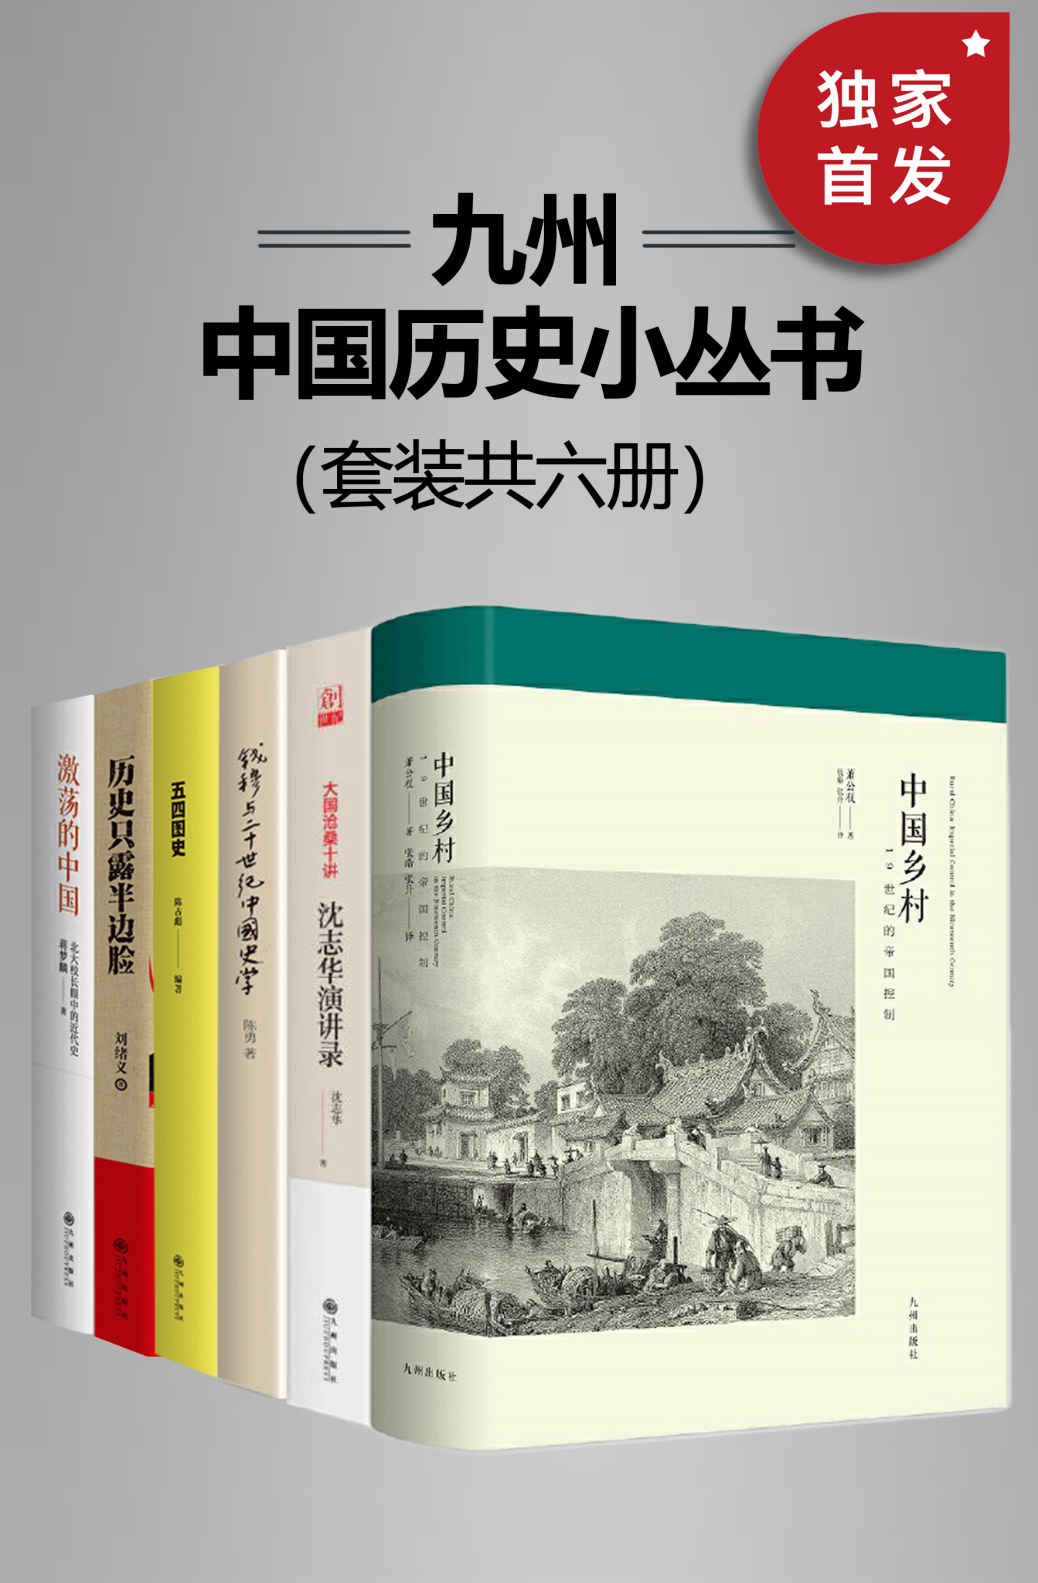 《九州中国历史小丛书(套装共6册)》-azw3,mobi,epub,pdf,txt,kindle电子书免费下载